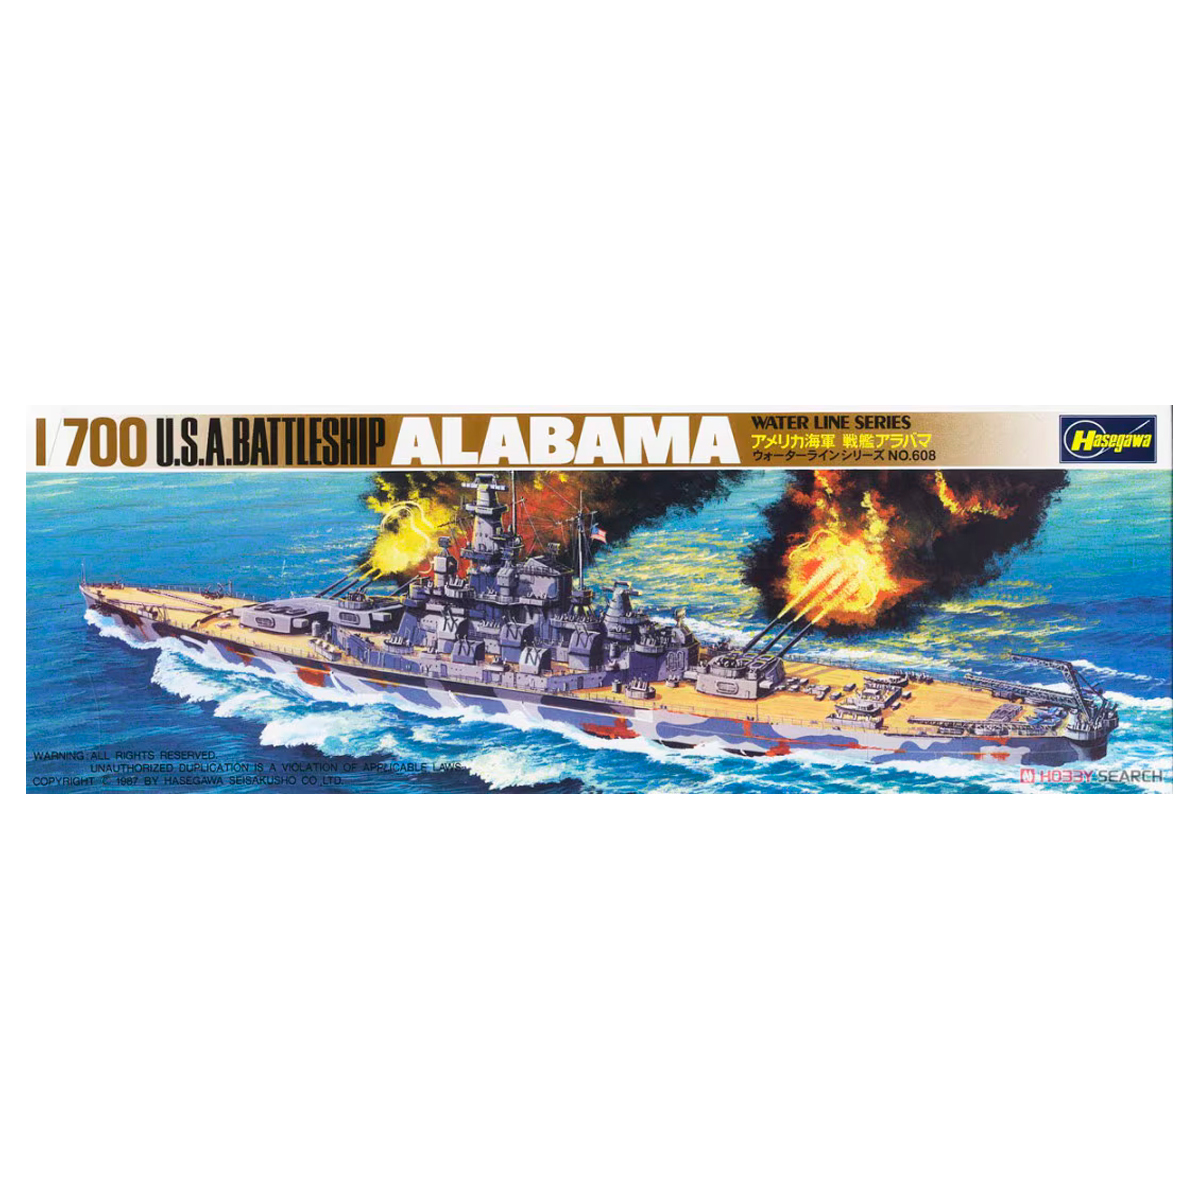 WL608 1/700 U.S. BATTLE SHIP ALABAMA